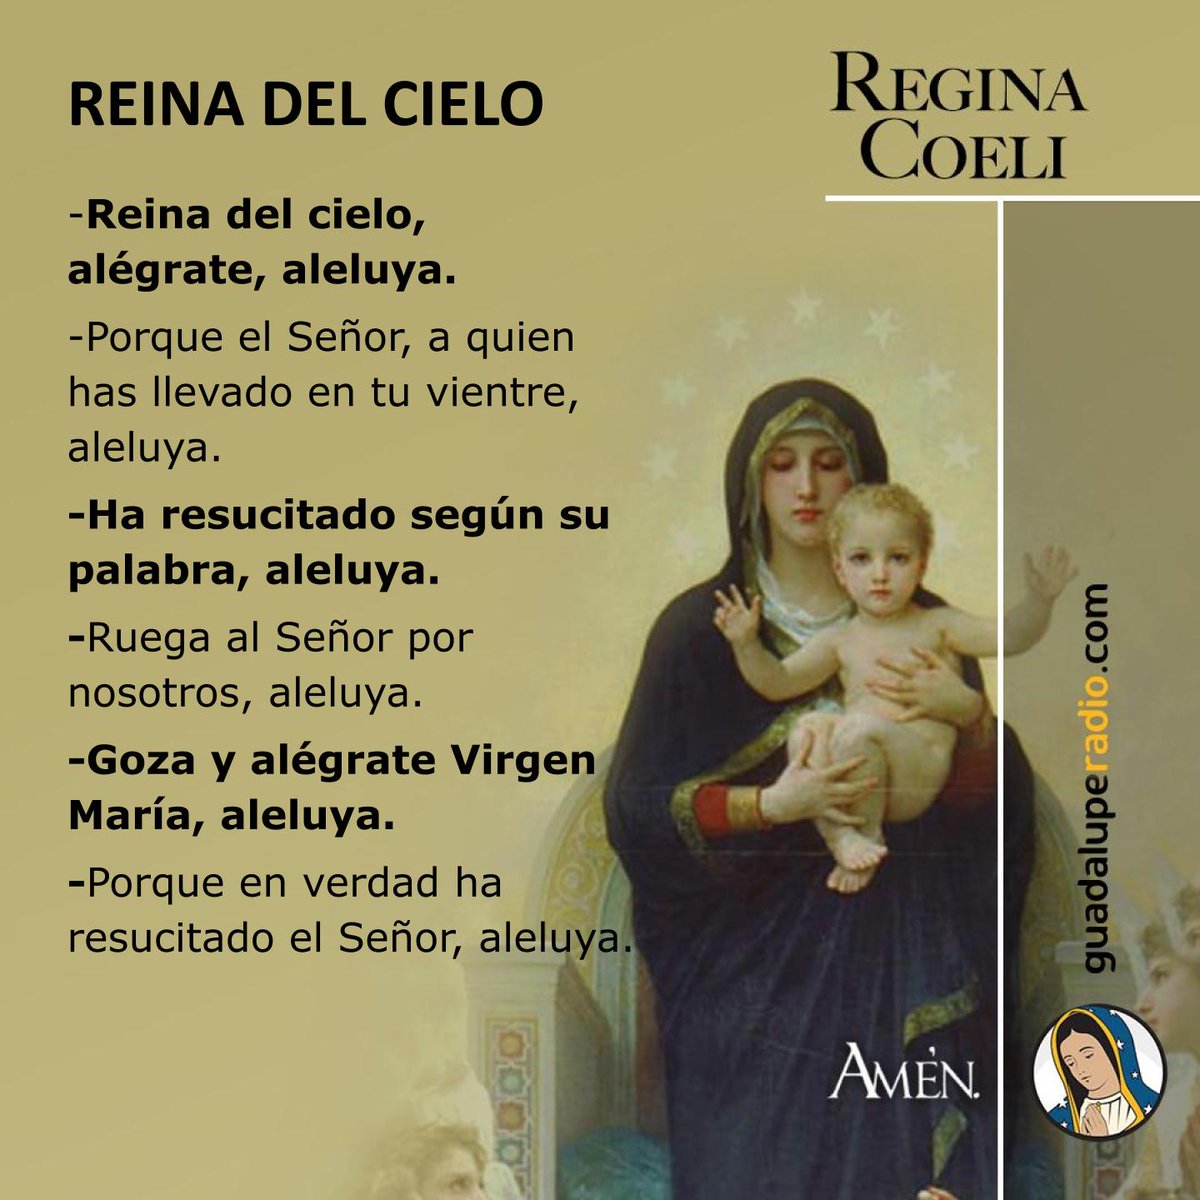 ¡El Señor resucitó según su palabra, Aleluya!
#ReginaCoeli
#GuadalupeRadio